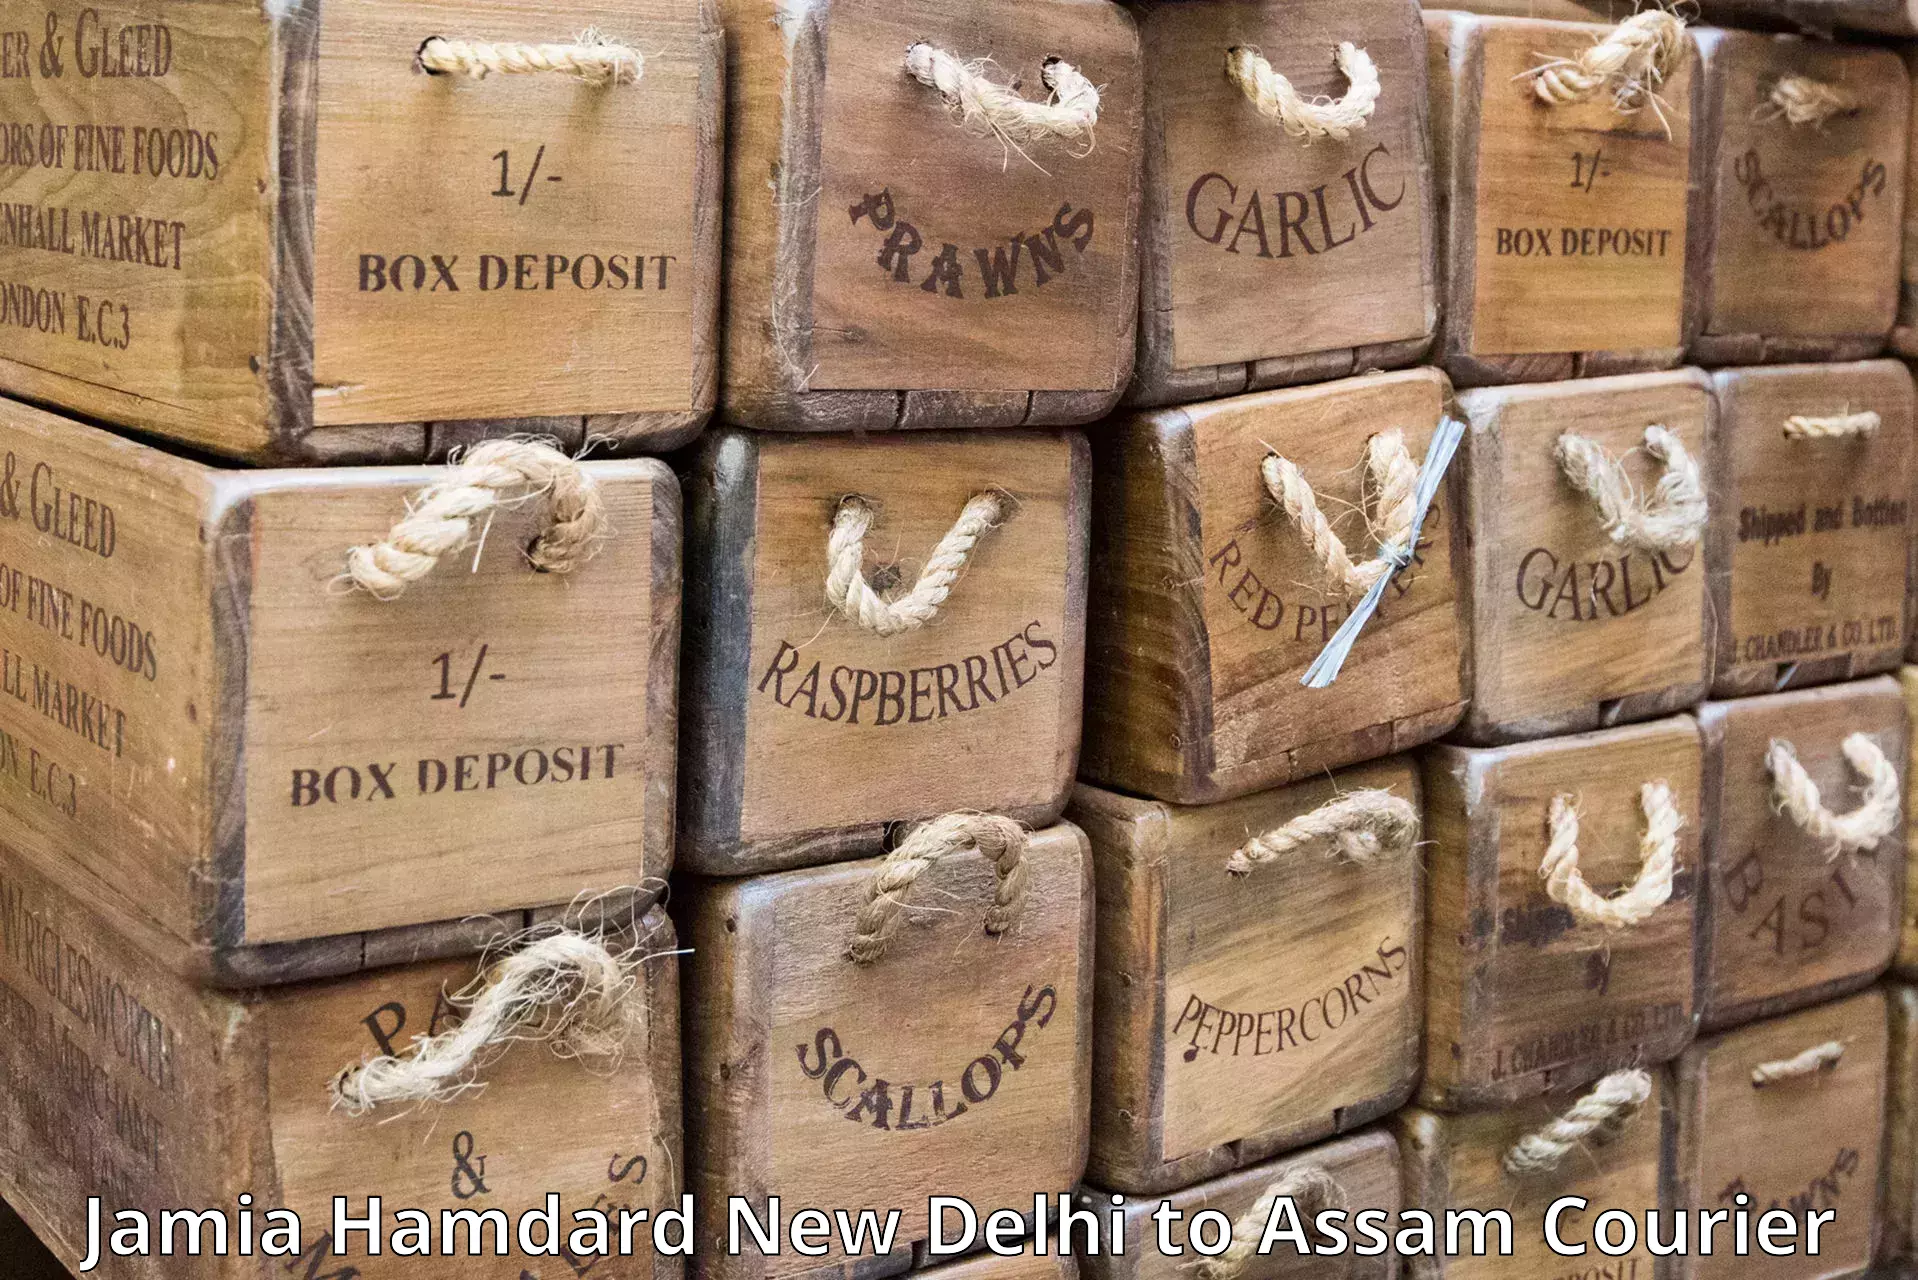 Global delivery options Jamia Hamdard New Delhi to Hailakandi